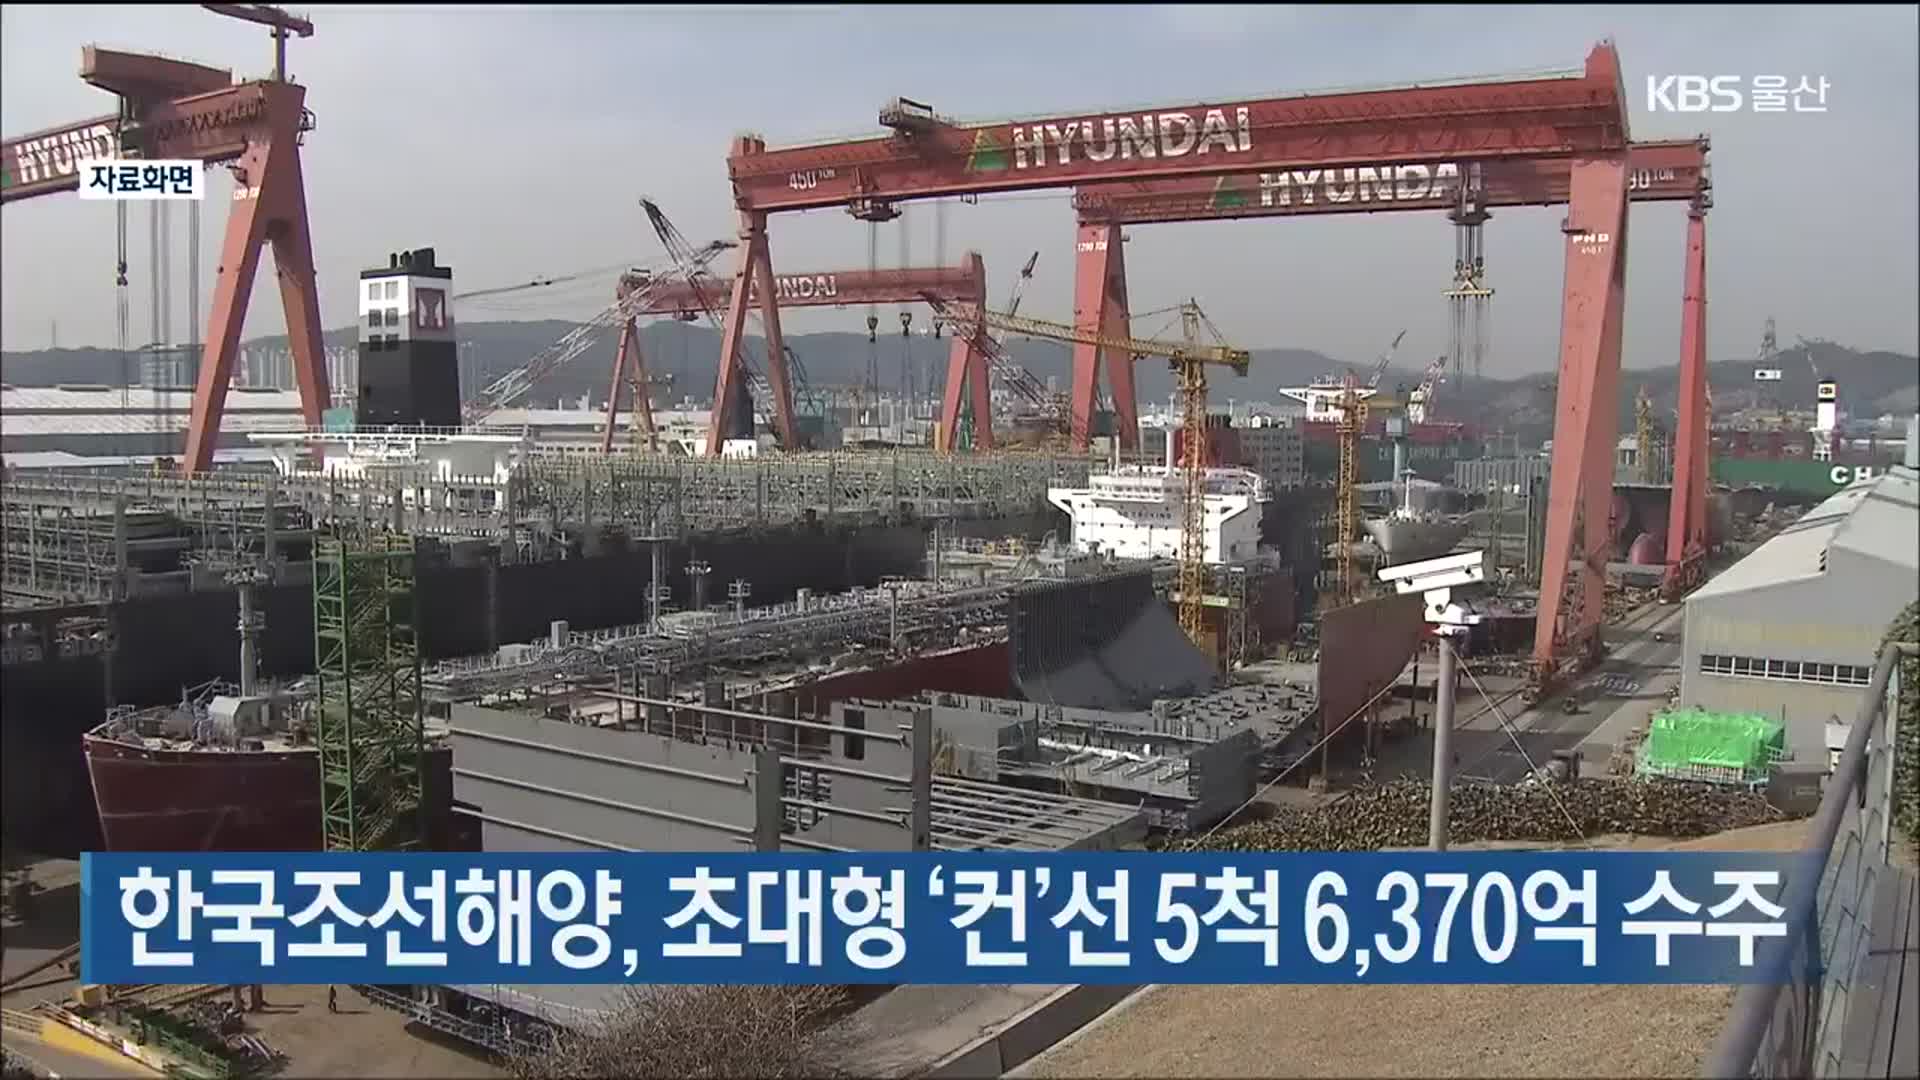 한국조선해양, 초대형 ‘컨’선 5척 6,370억 수주